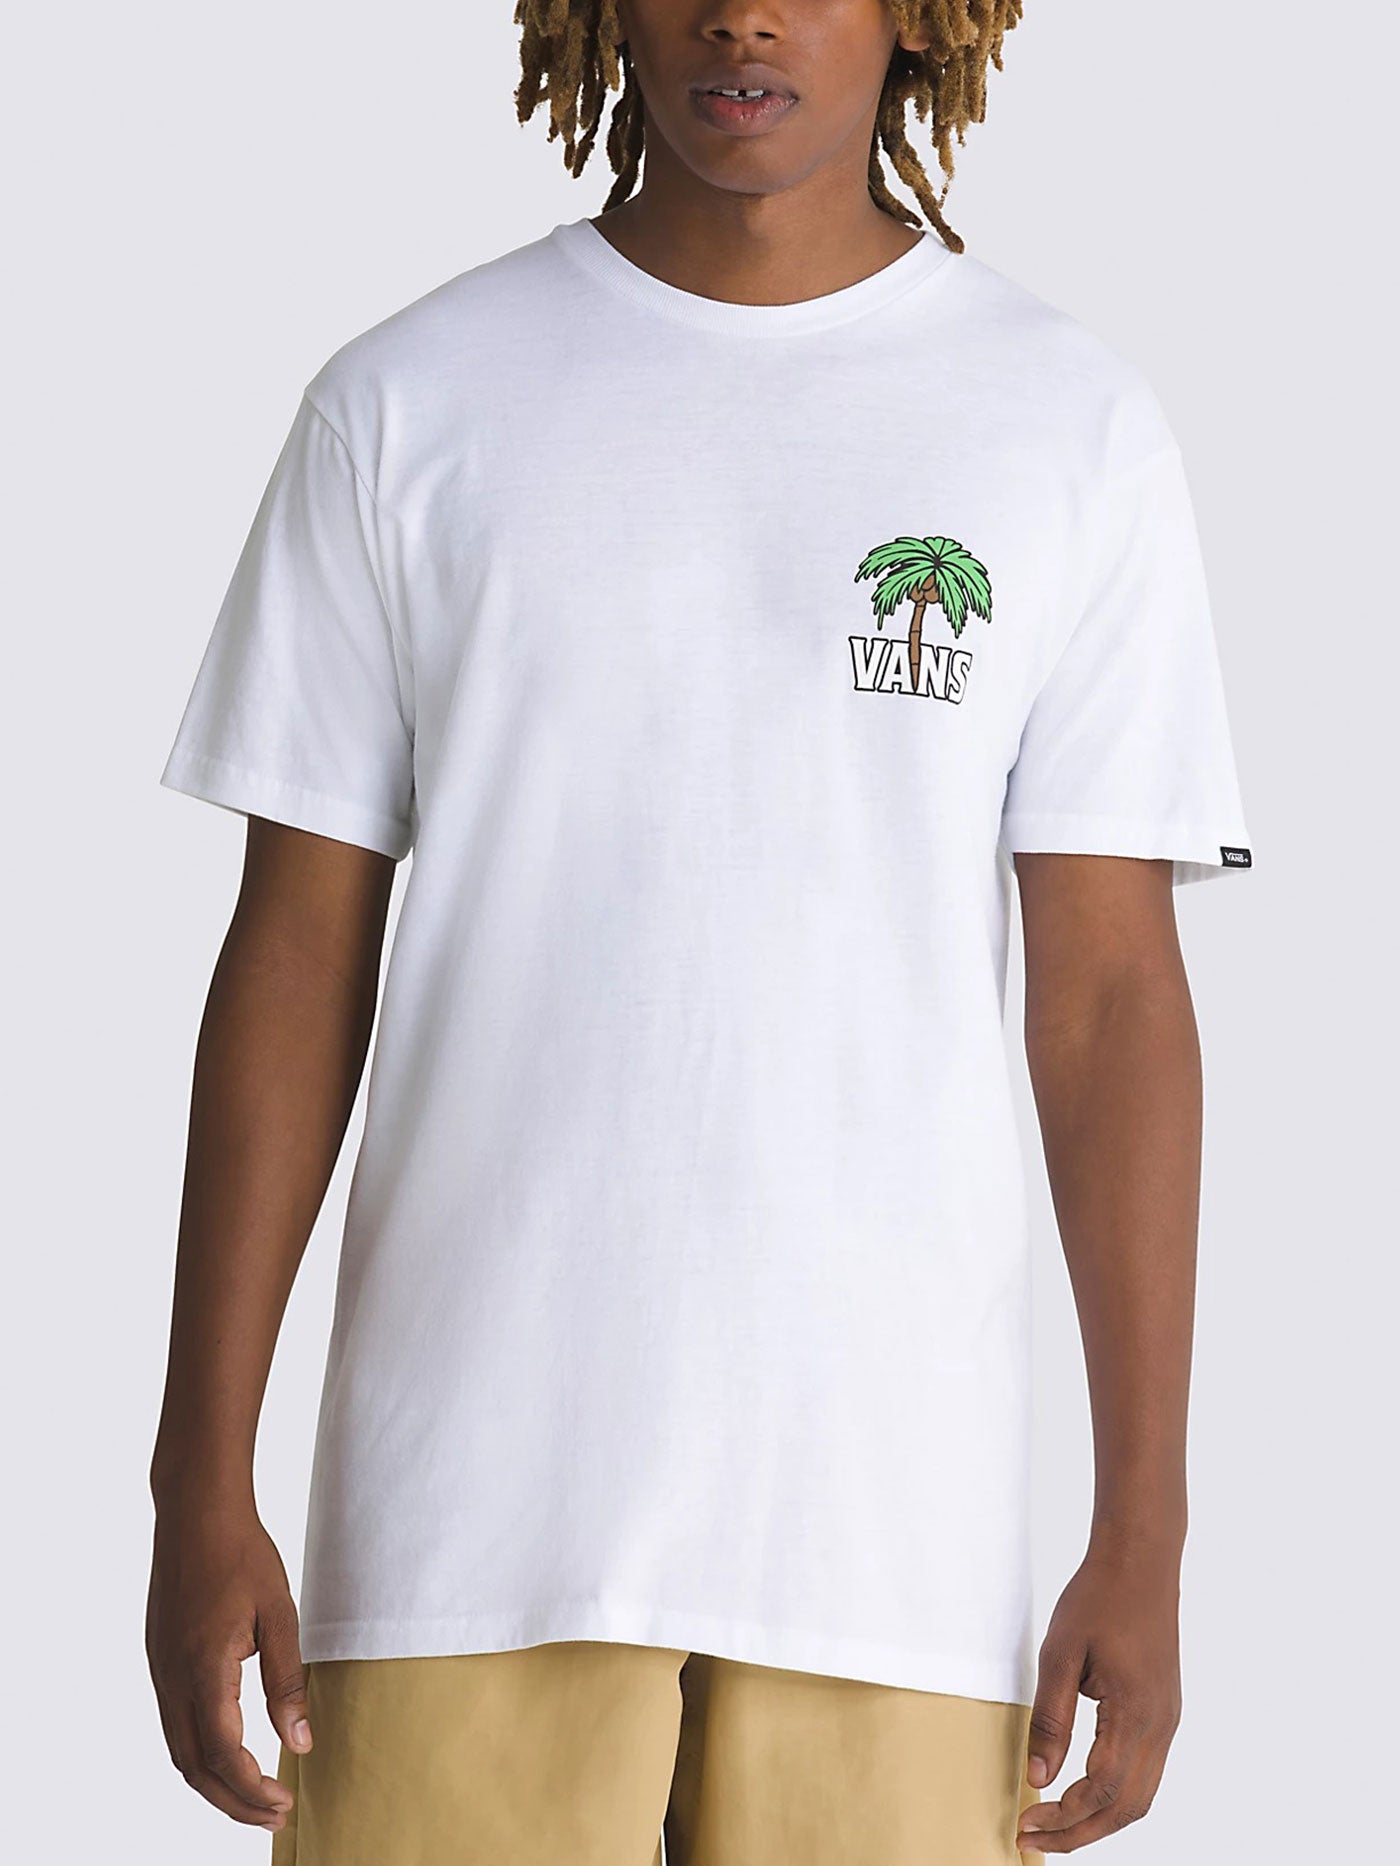 Vans Down Time T-Shirt Summer 2024